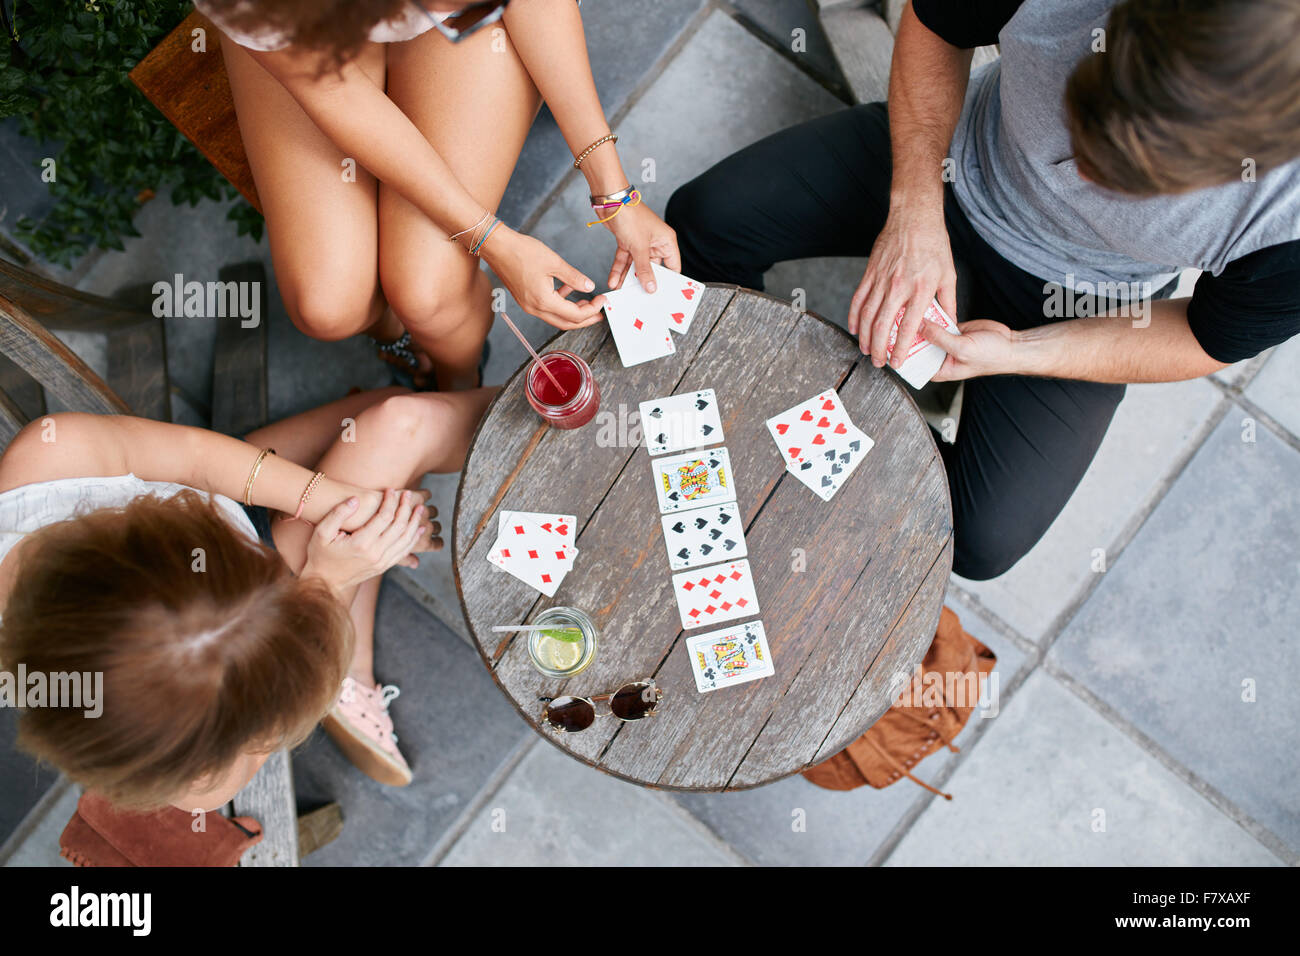 Vue du haut de trois jeunes jouant aux cartes at sidewalk cafe. Les jeunes gens assis autour d'une table basse et de jouer des jeux de cartes. Banque D'Images